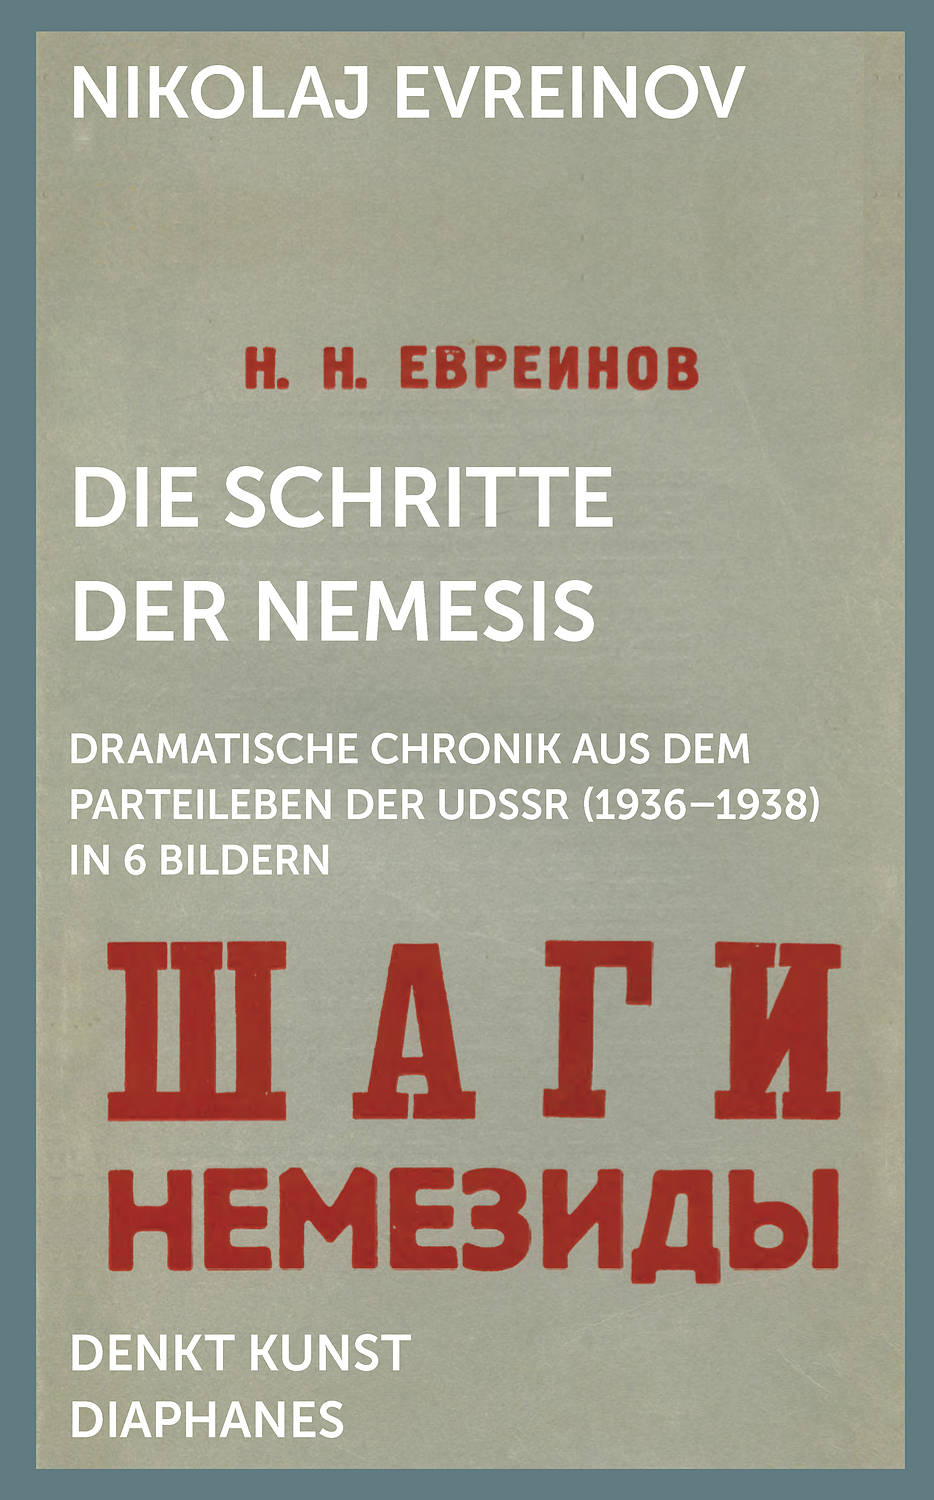 Coverabbildung des Buches Schritte der Nemesis mit kyrillischer Schrift